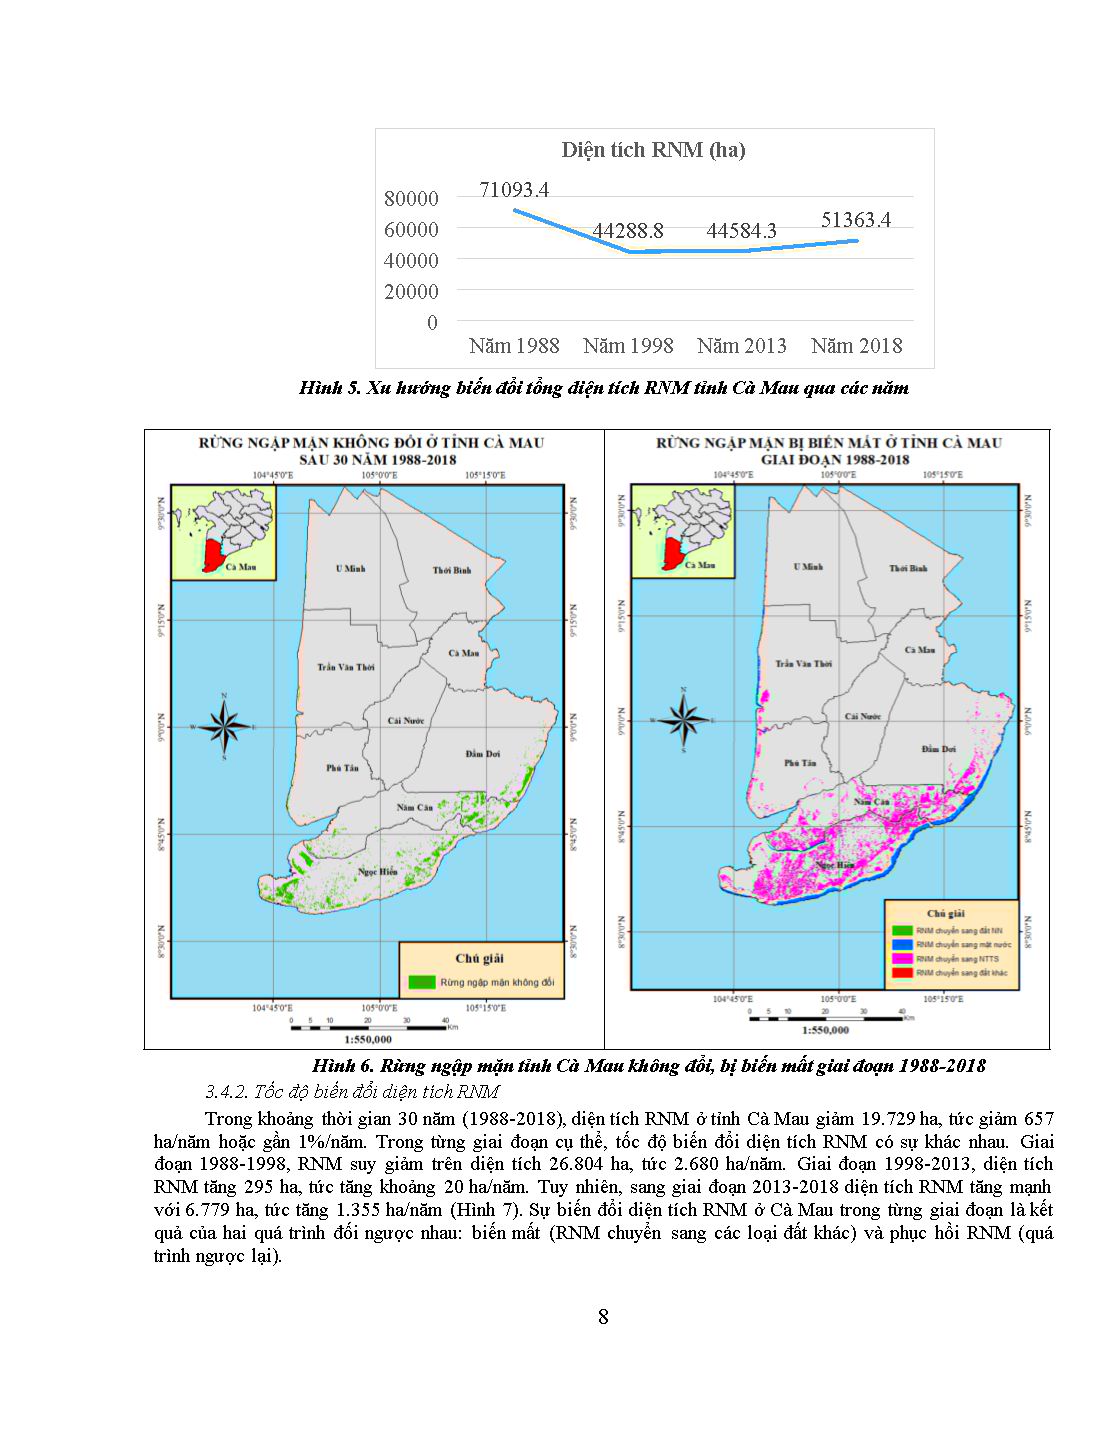 Đánh giá biến động rừng ngập mặn tỉnh Cà Mau trên cơ sở ảnh vệ tinh giai đoạn 1988-2018 trang 8